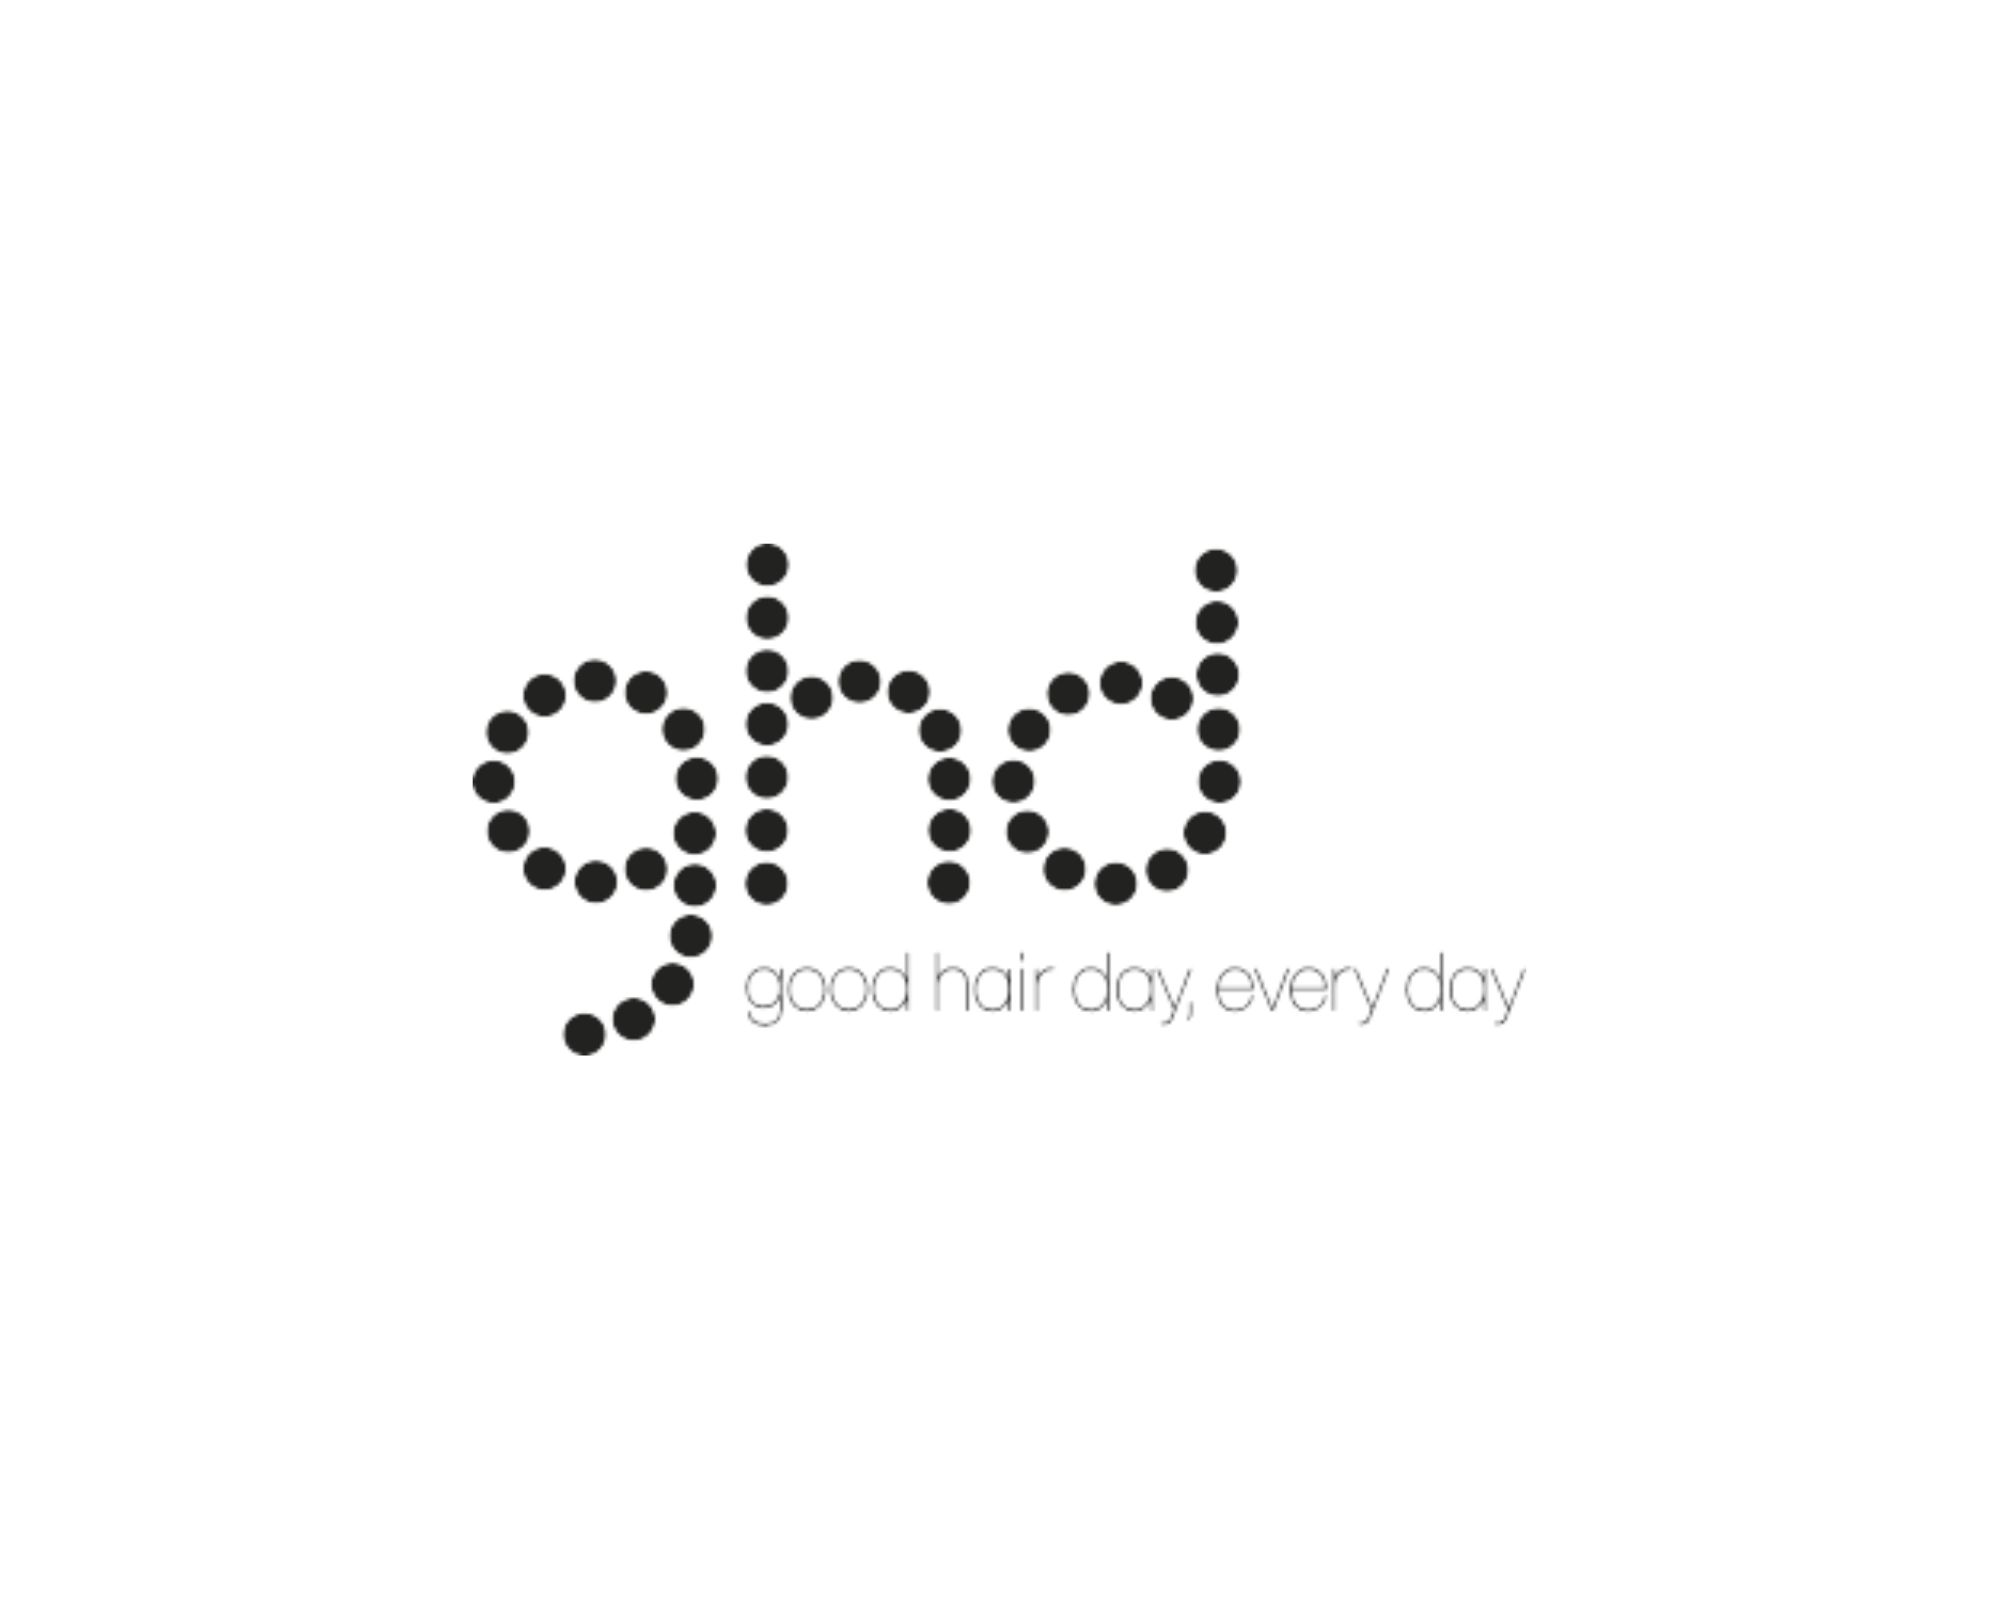 Logo GHD